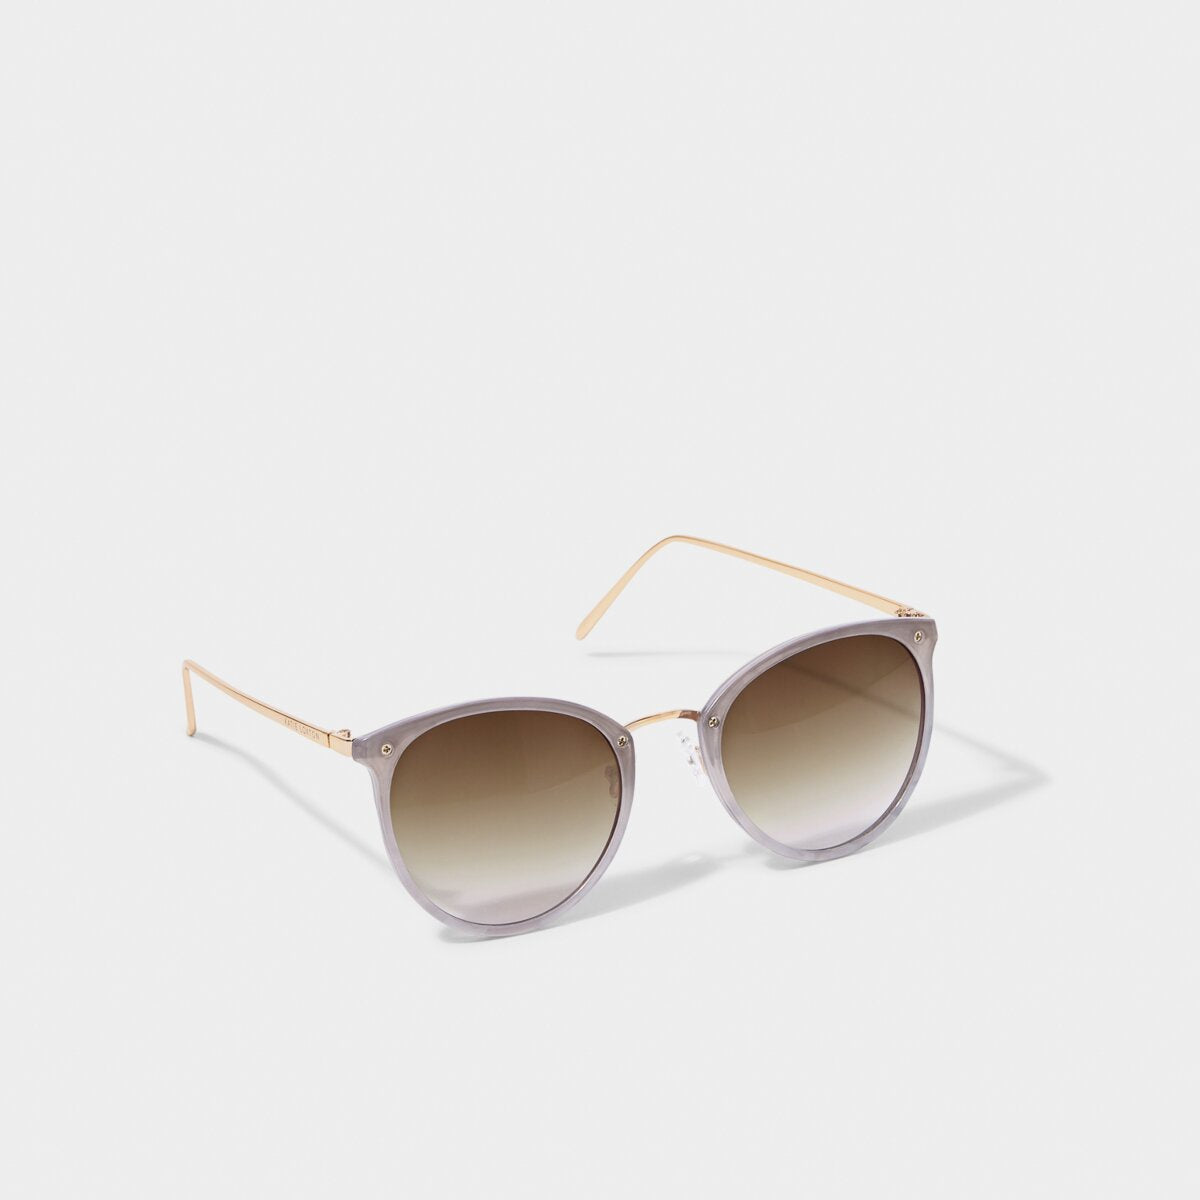 Sardinia sunglasses